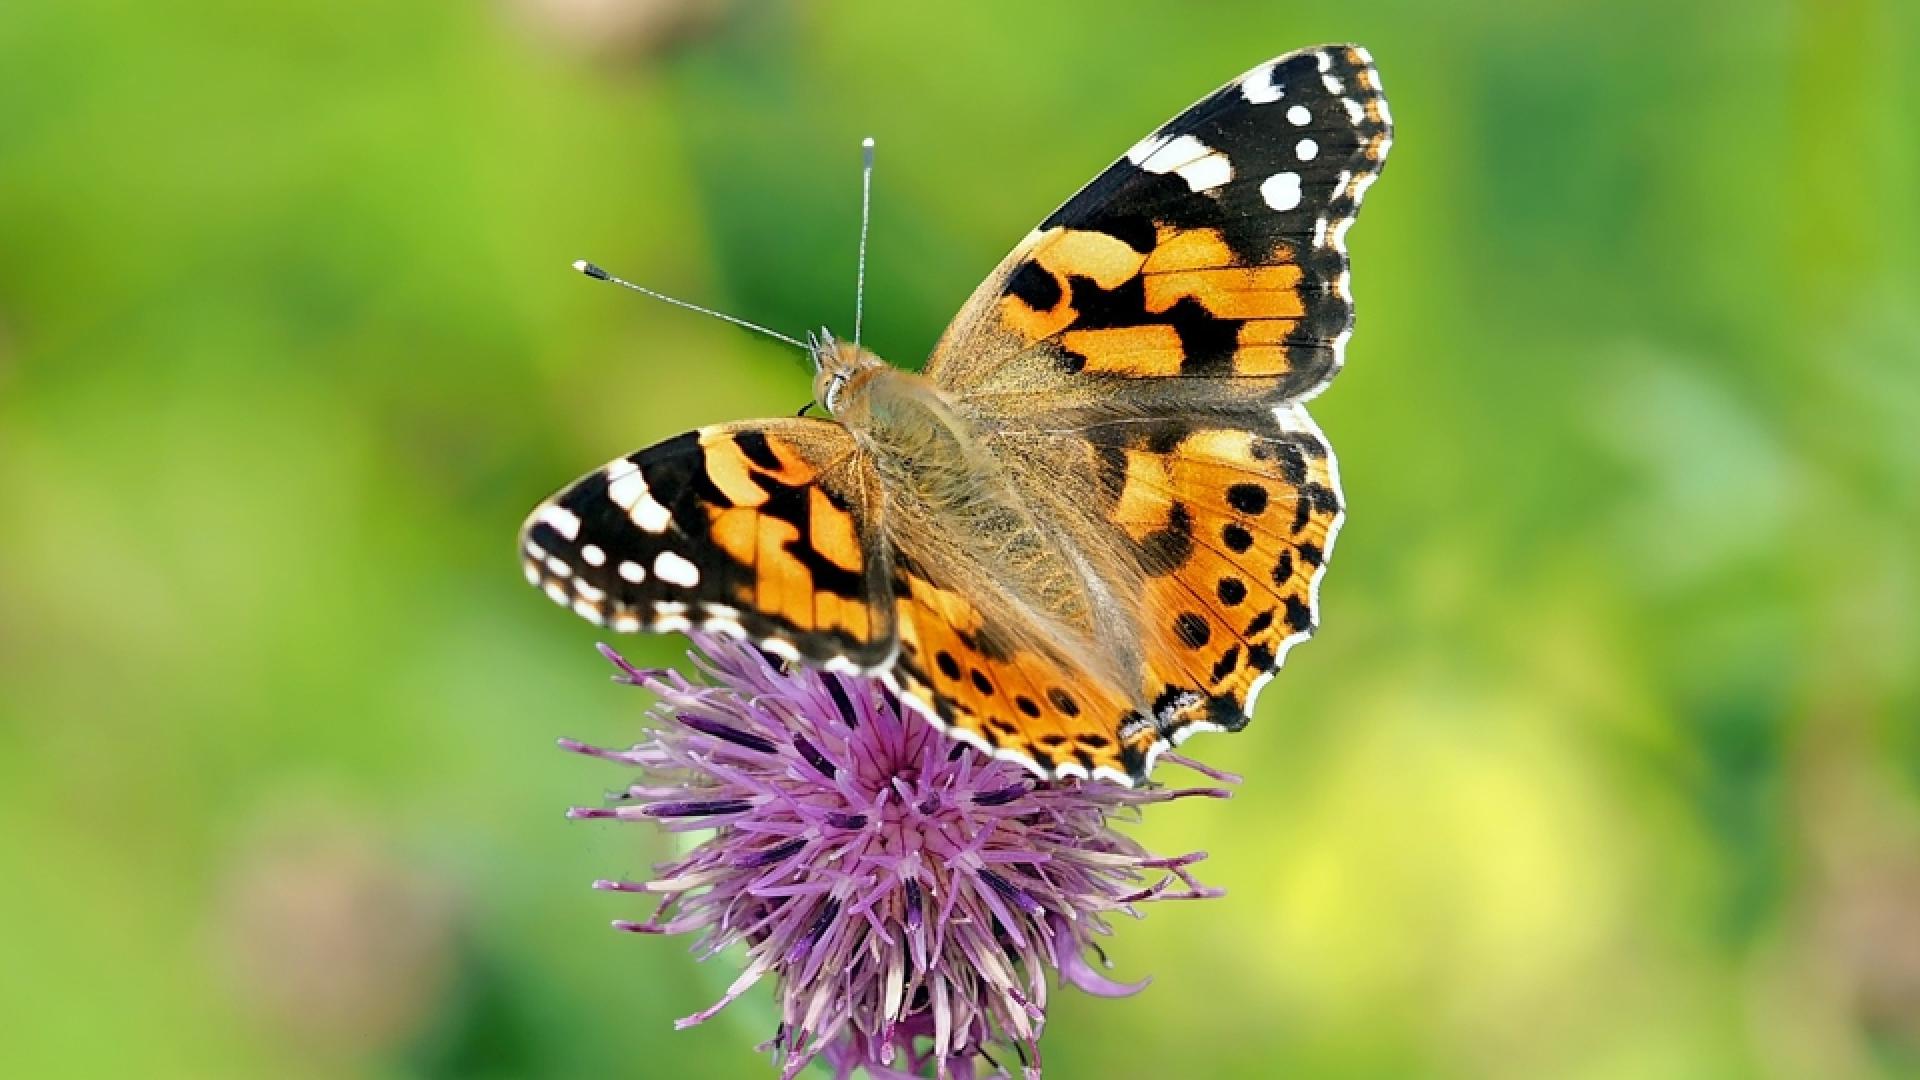 Schmetterling als Beispiel zur Weltnaturschutzkonferenz